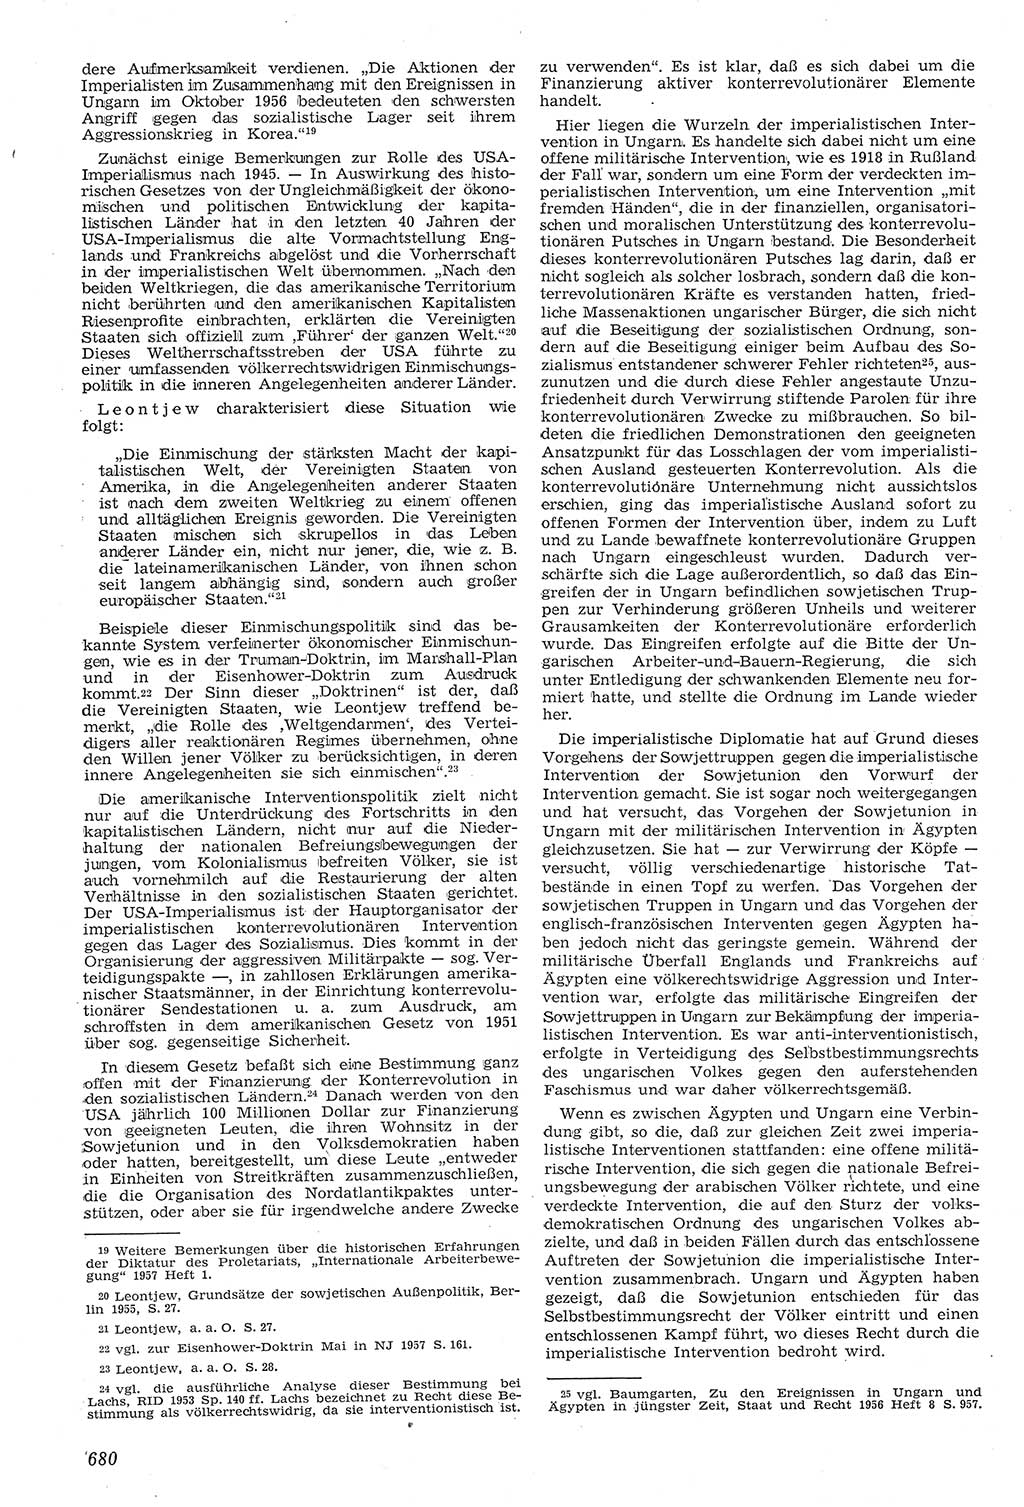 Neue Justiz (NJ), Zeitschrift für Recht und Rechtswissenschaft [Deutsche Demokratische Republik (DDR)], 11. Jahrgang 1957, Seite 680 (NJ DDR 1957, S. 680)